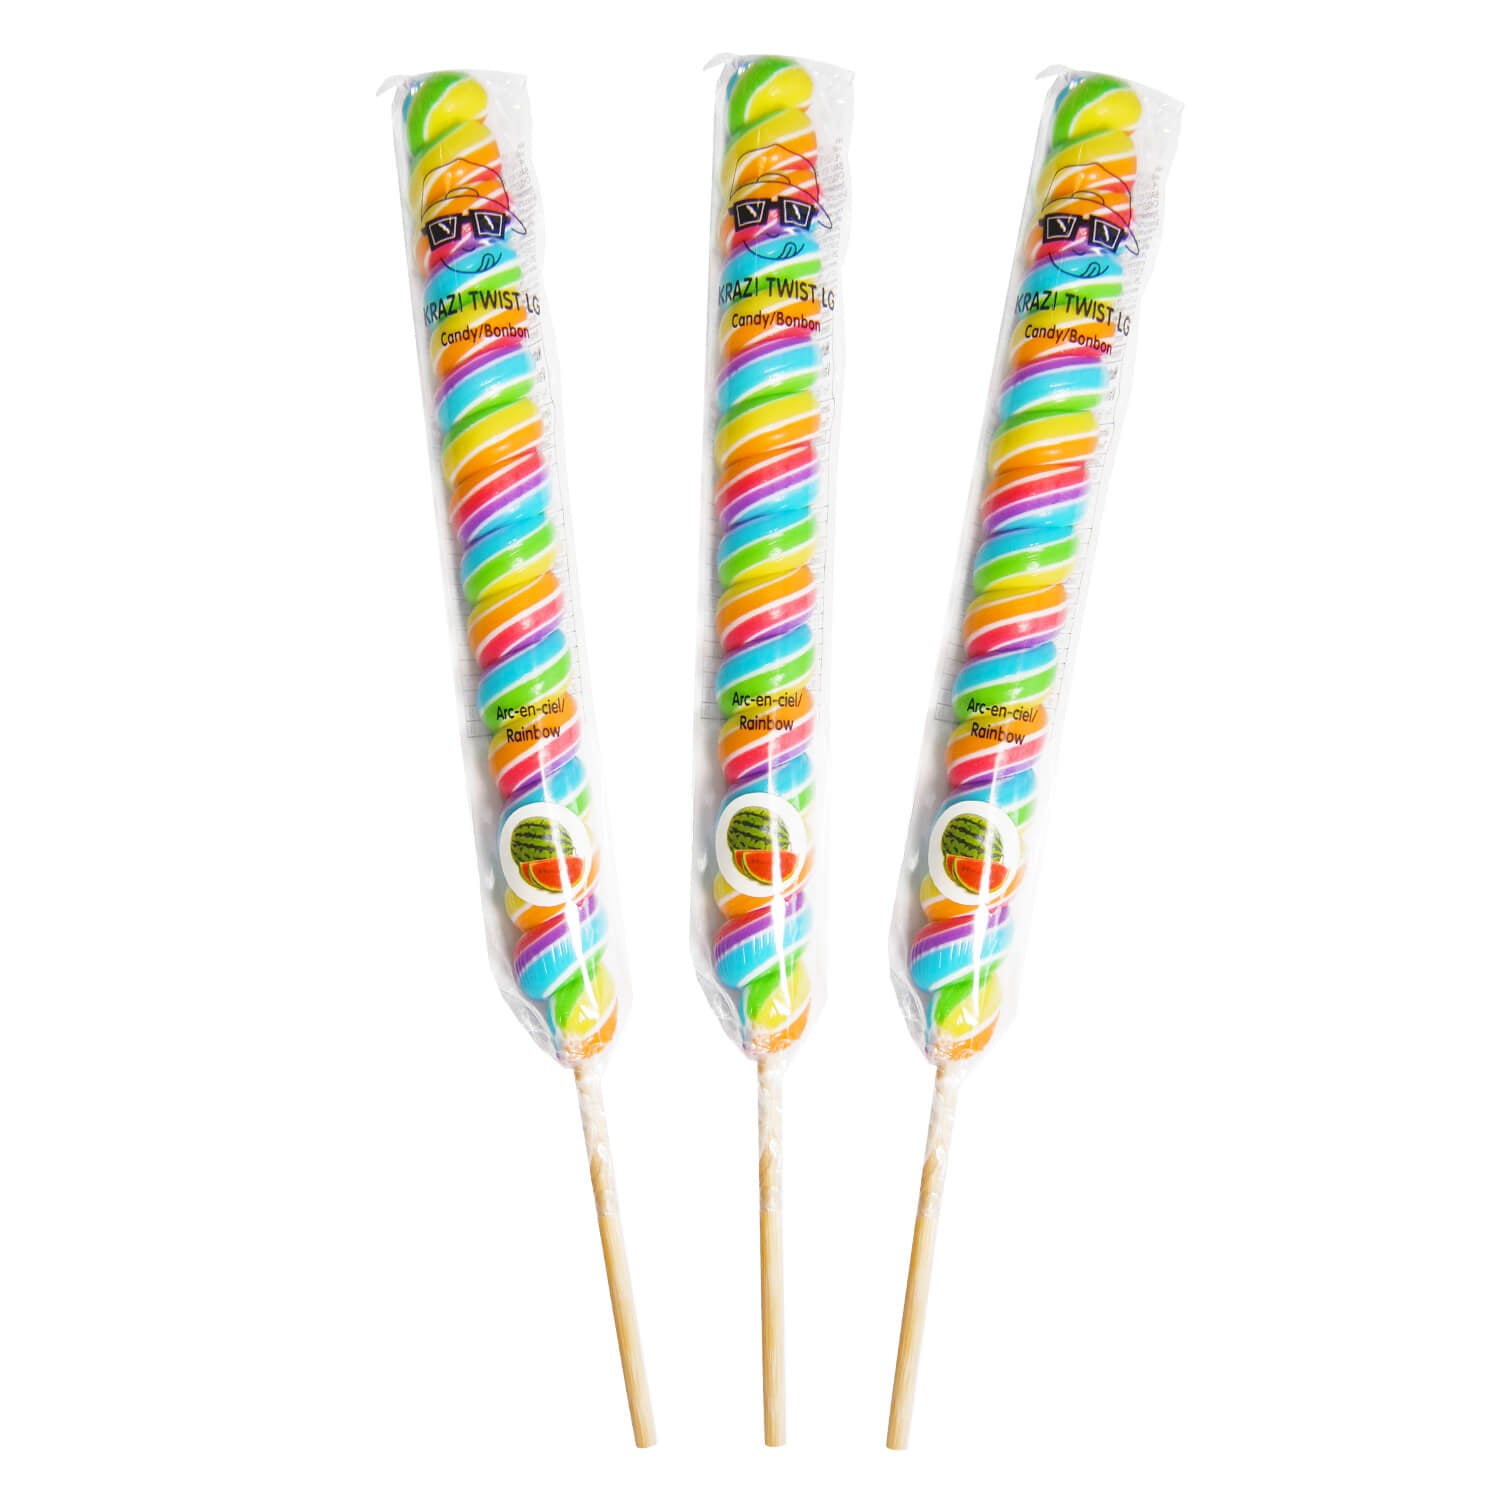 Rainbow Krazi twist lollipops - 3 units